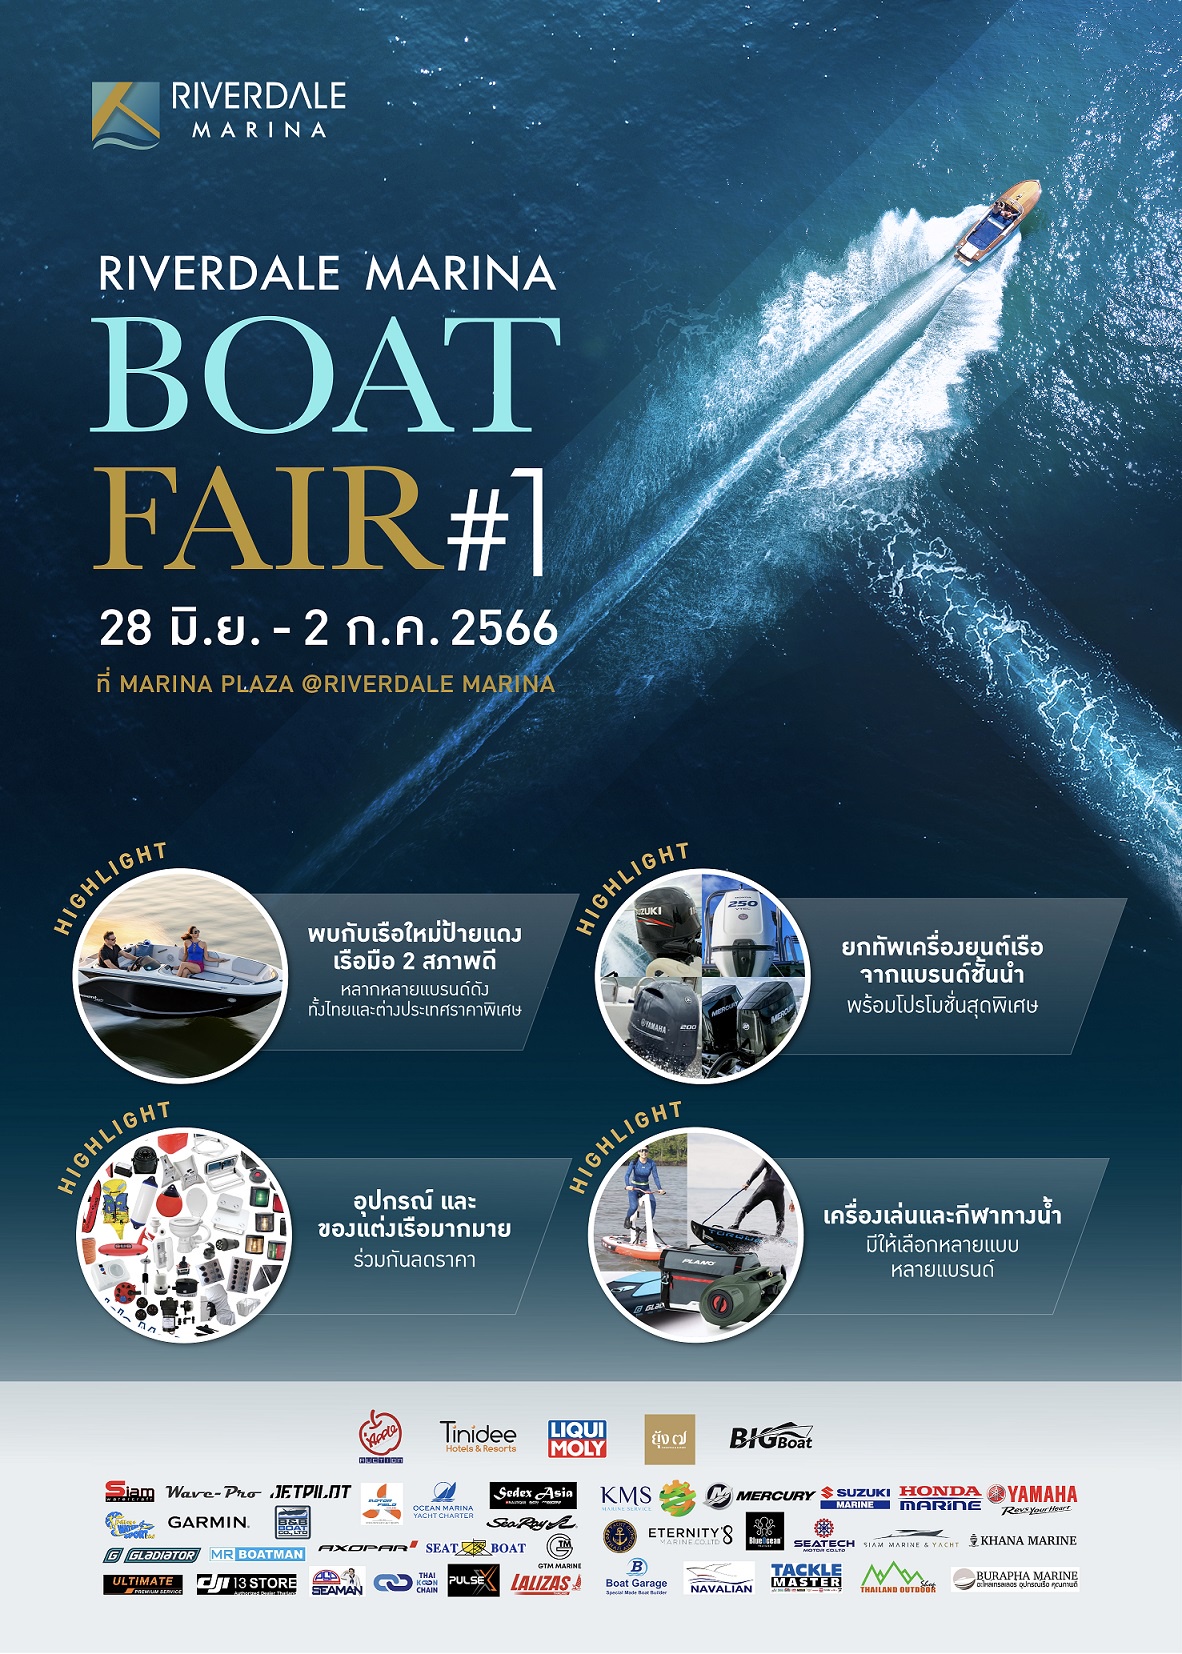 ริเวอร์เดล มารีน่า ชวนตื่นตาตื่นใจกับเรือสปอร์ต ครั้งแรกกับการ Test Drive เรือ Wave 24 Pro Hybrid Cat ชมสินค้าเกี่ยวกับเรือ ราคาสุดคุ้ม ในงานมหกรรมเรือ Riverdale Marina Boat Fair